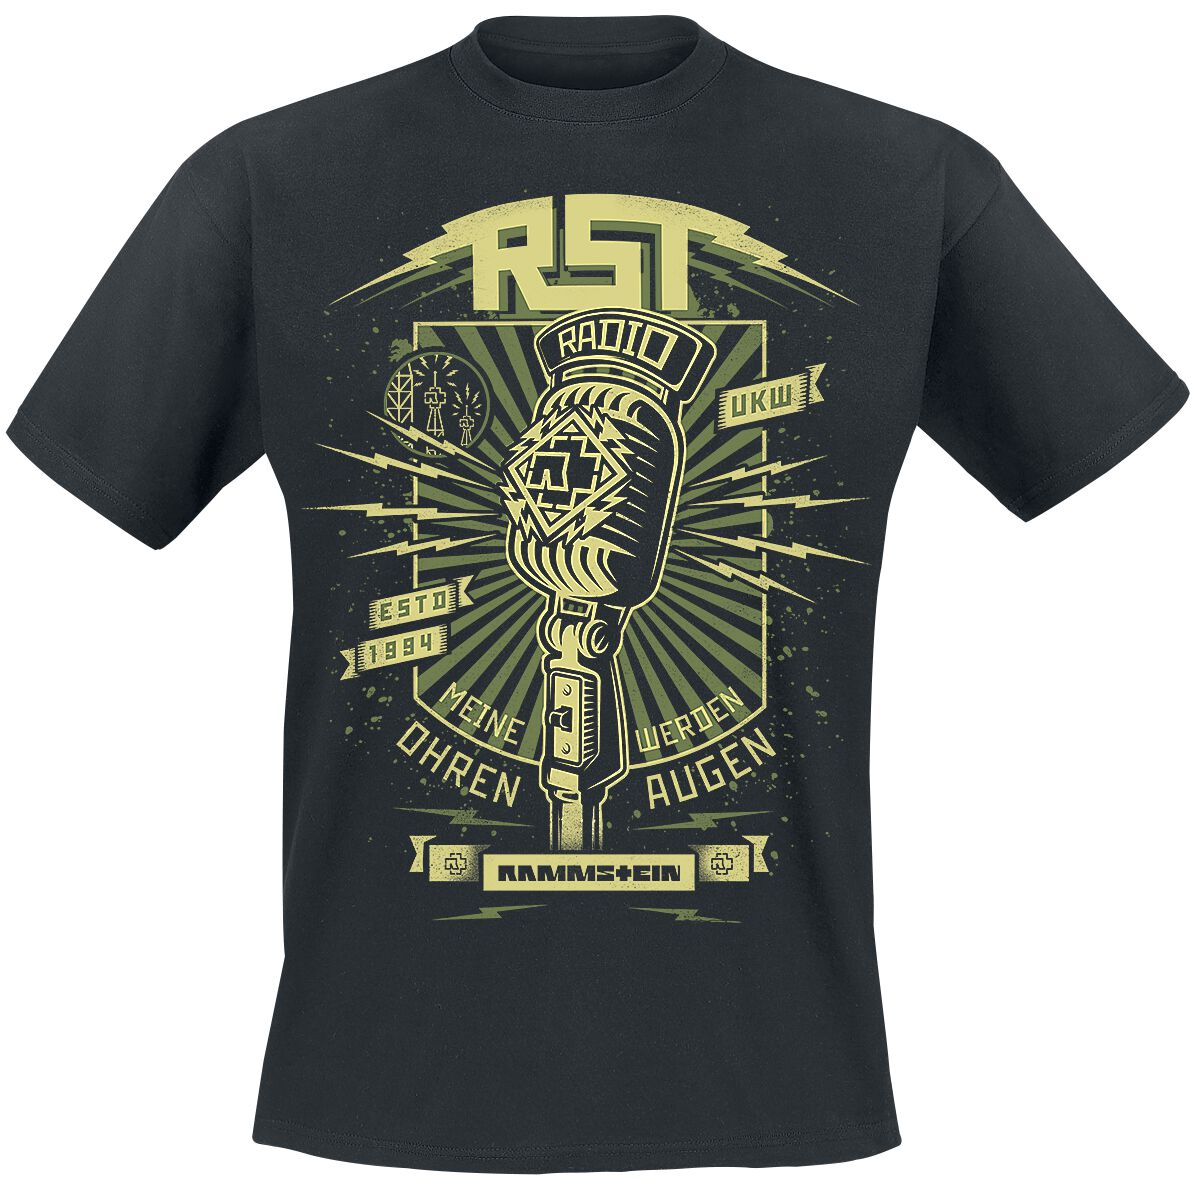 Rammstein T-Shirt - Radio - S bis 5XL - für Männer - Größe S - schwarz  - Lizenziertes Merchandise!